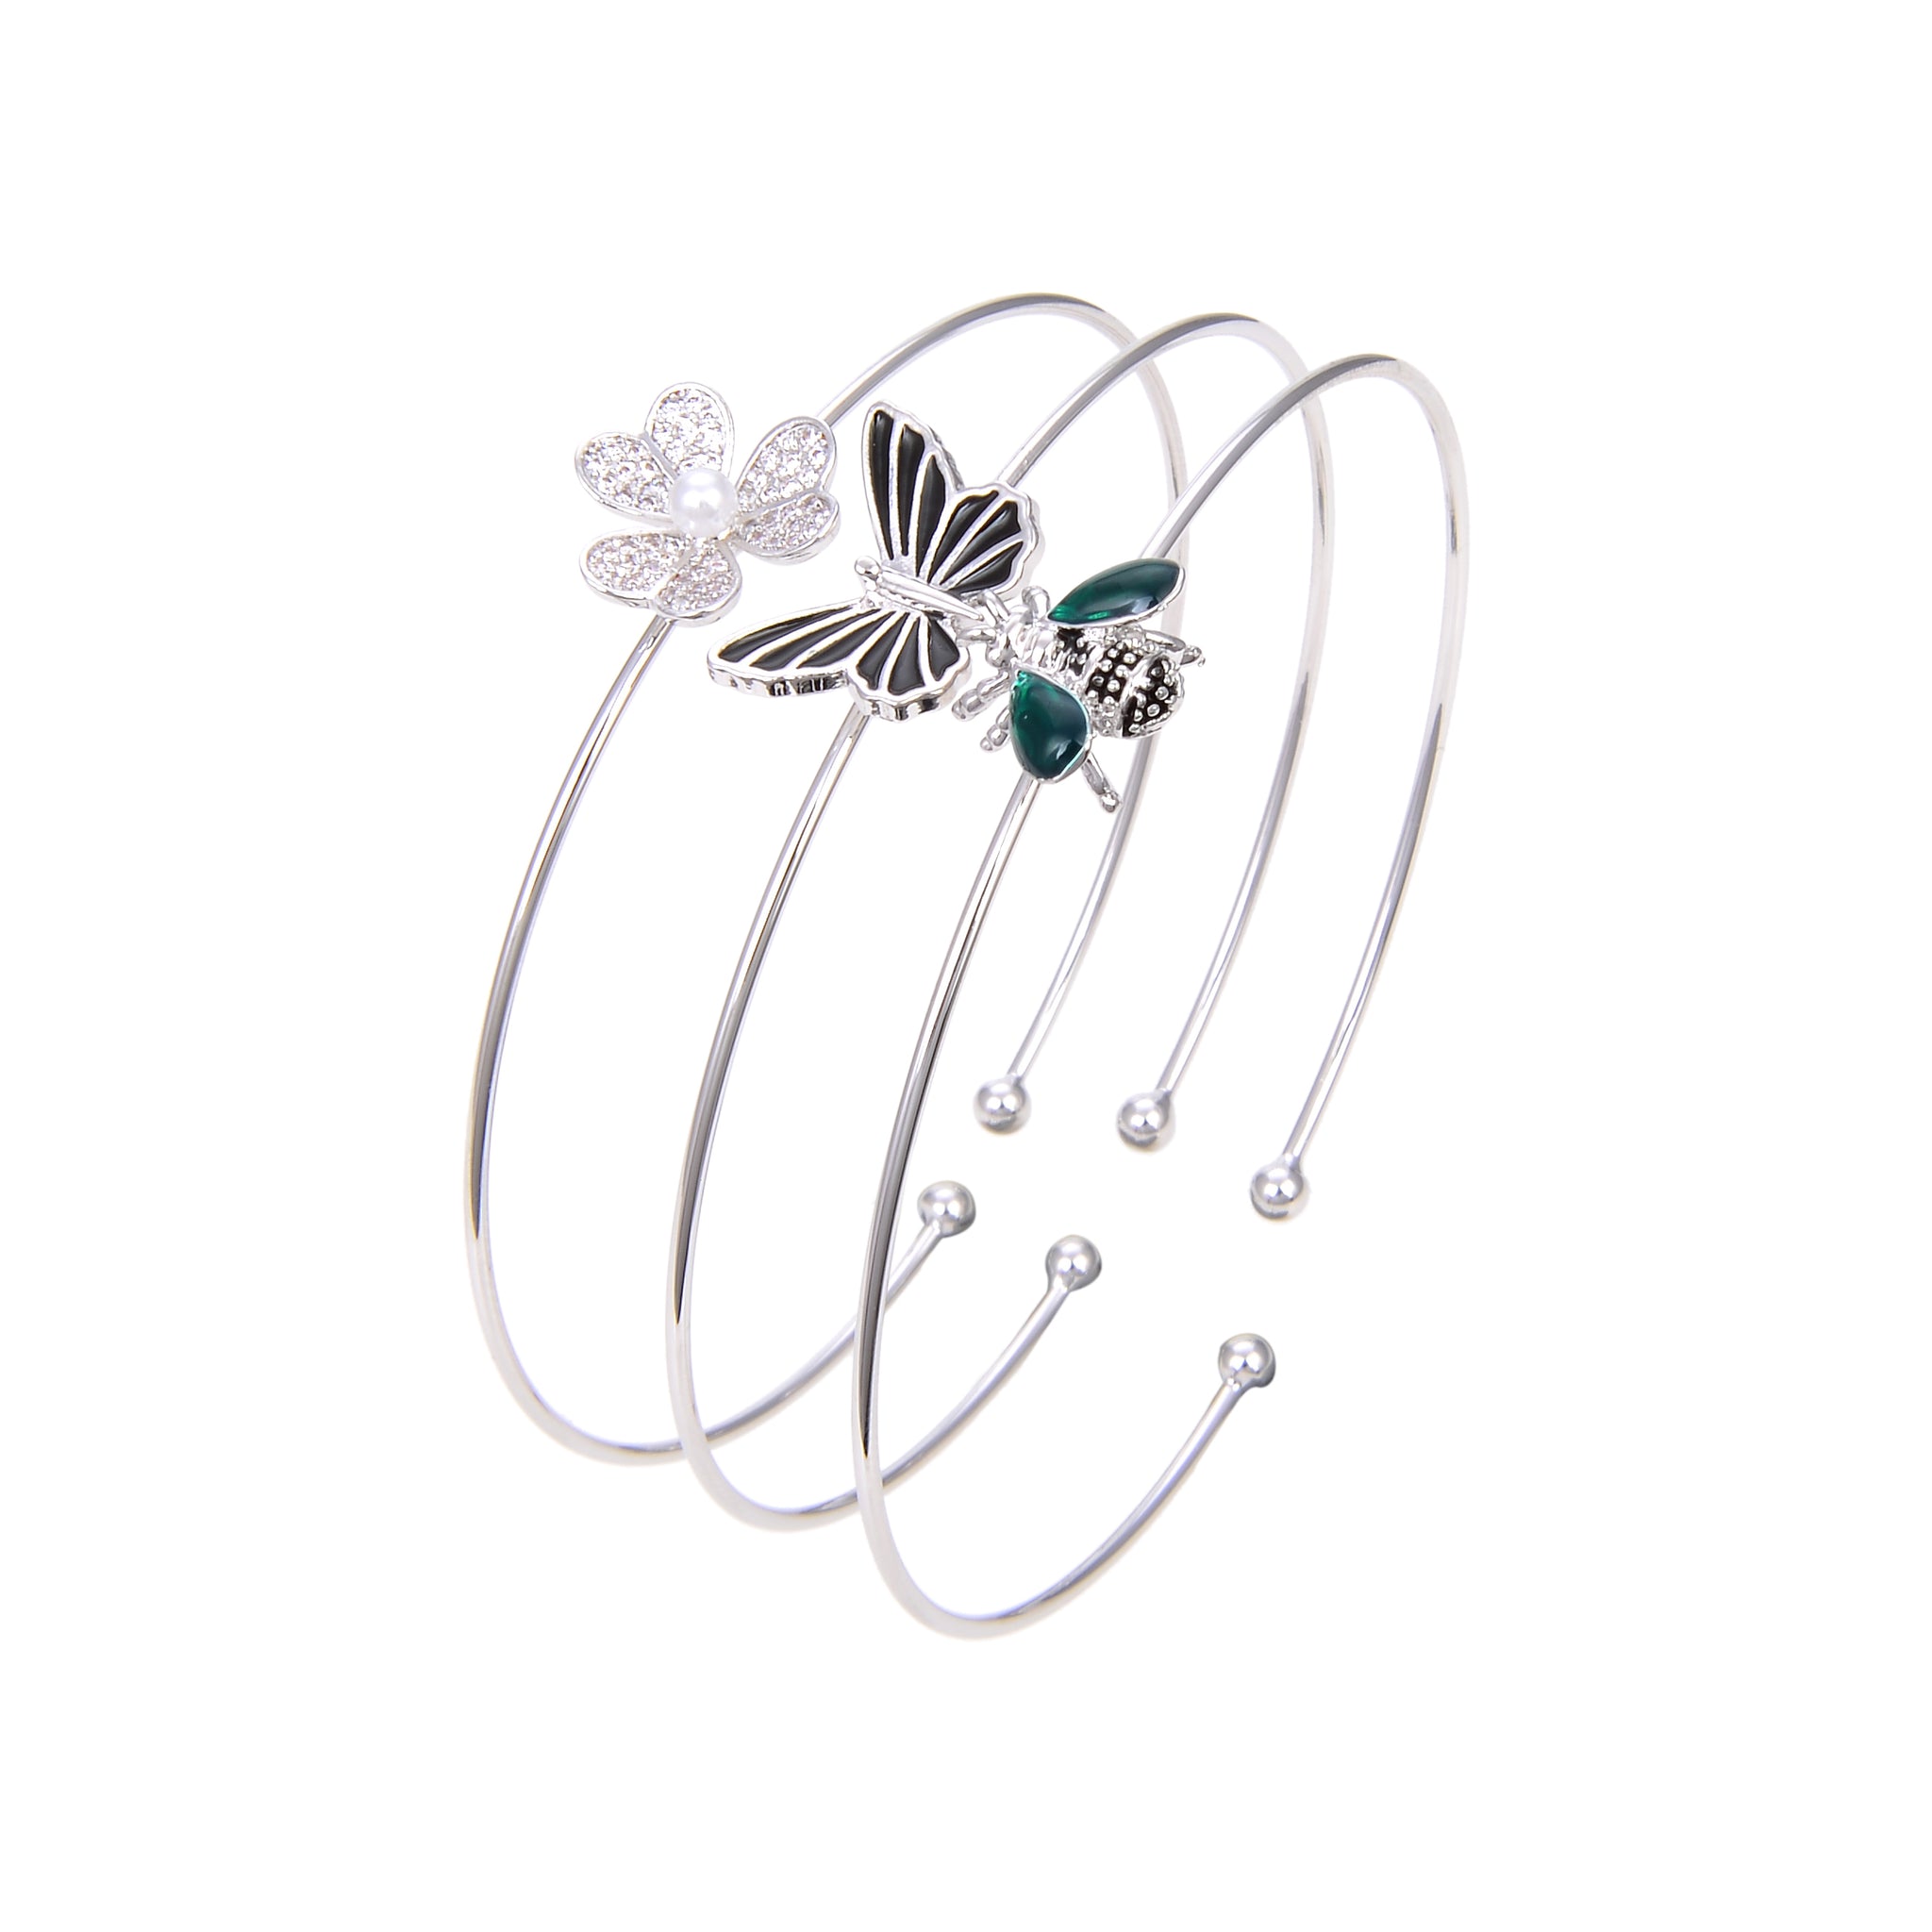 Silver Plated CZ Cubic Zirconia Bangle Bracelet, Black Onyx Butterfly Print CZ Bangle Bracelet